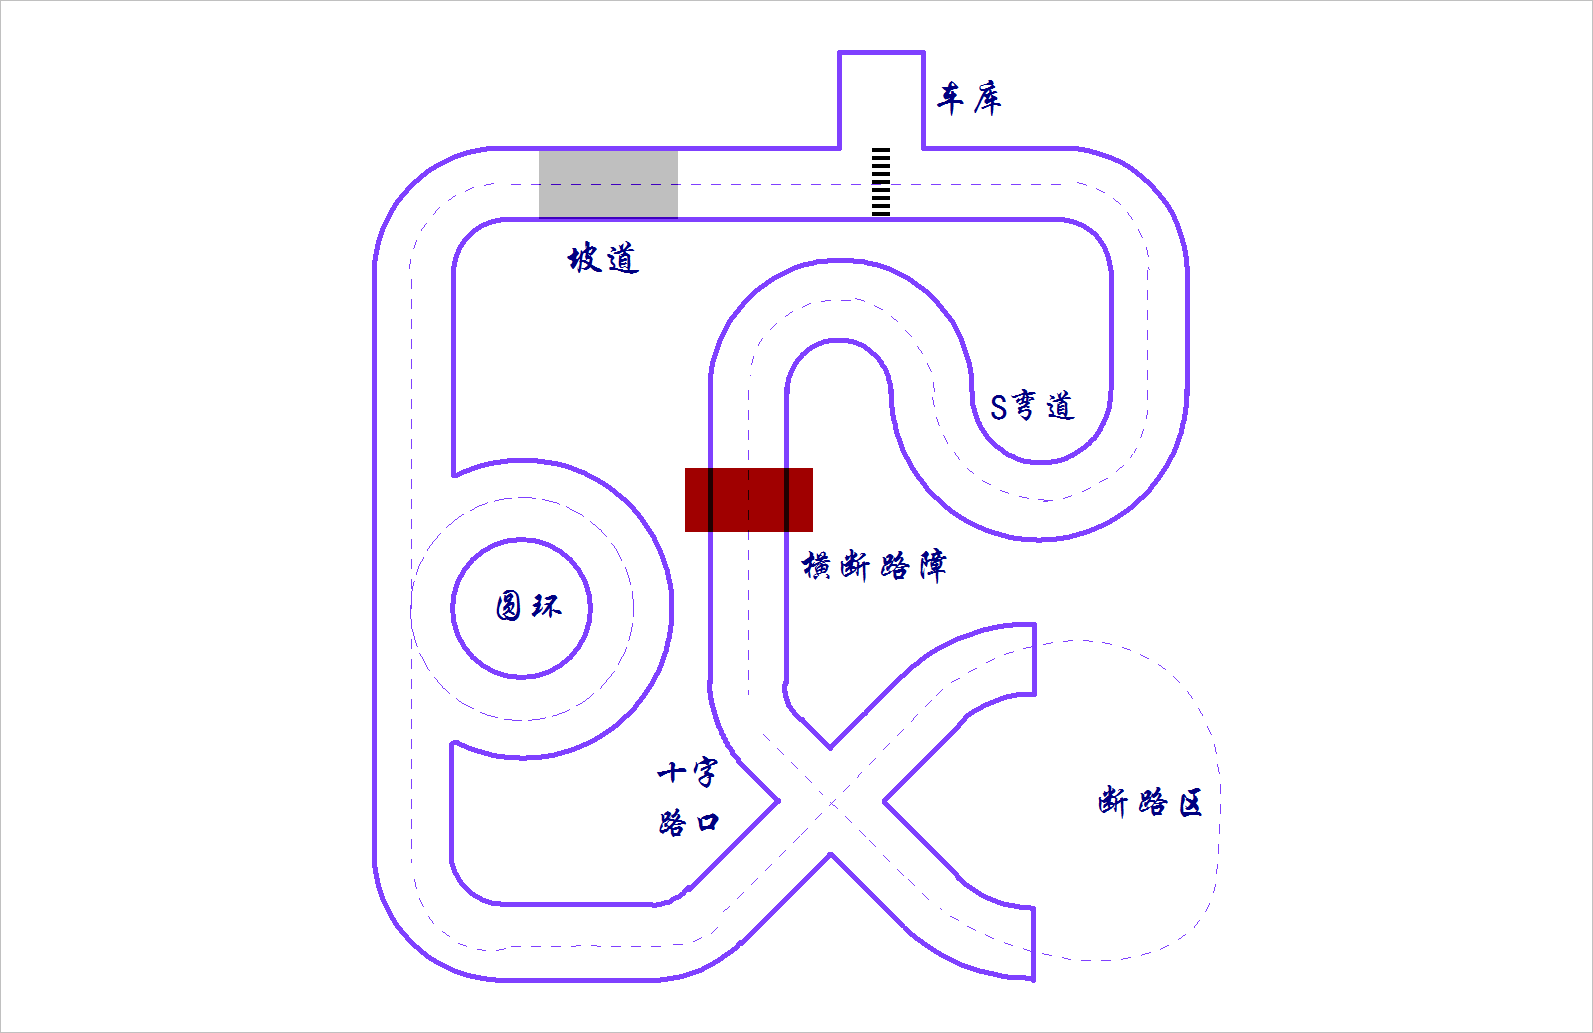 ▲ 图1.1.1 室内赛道示意图